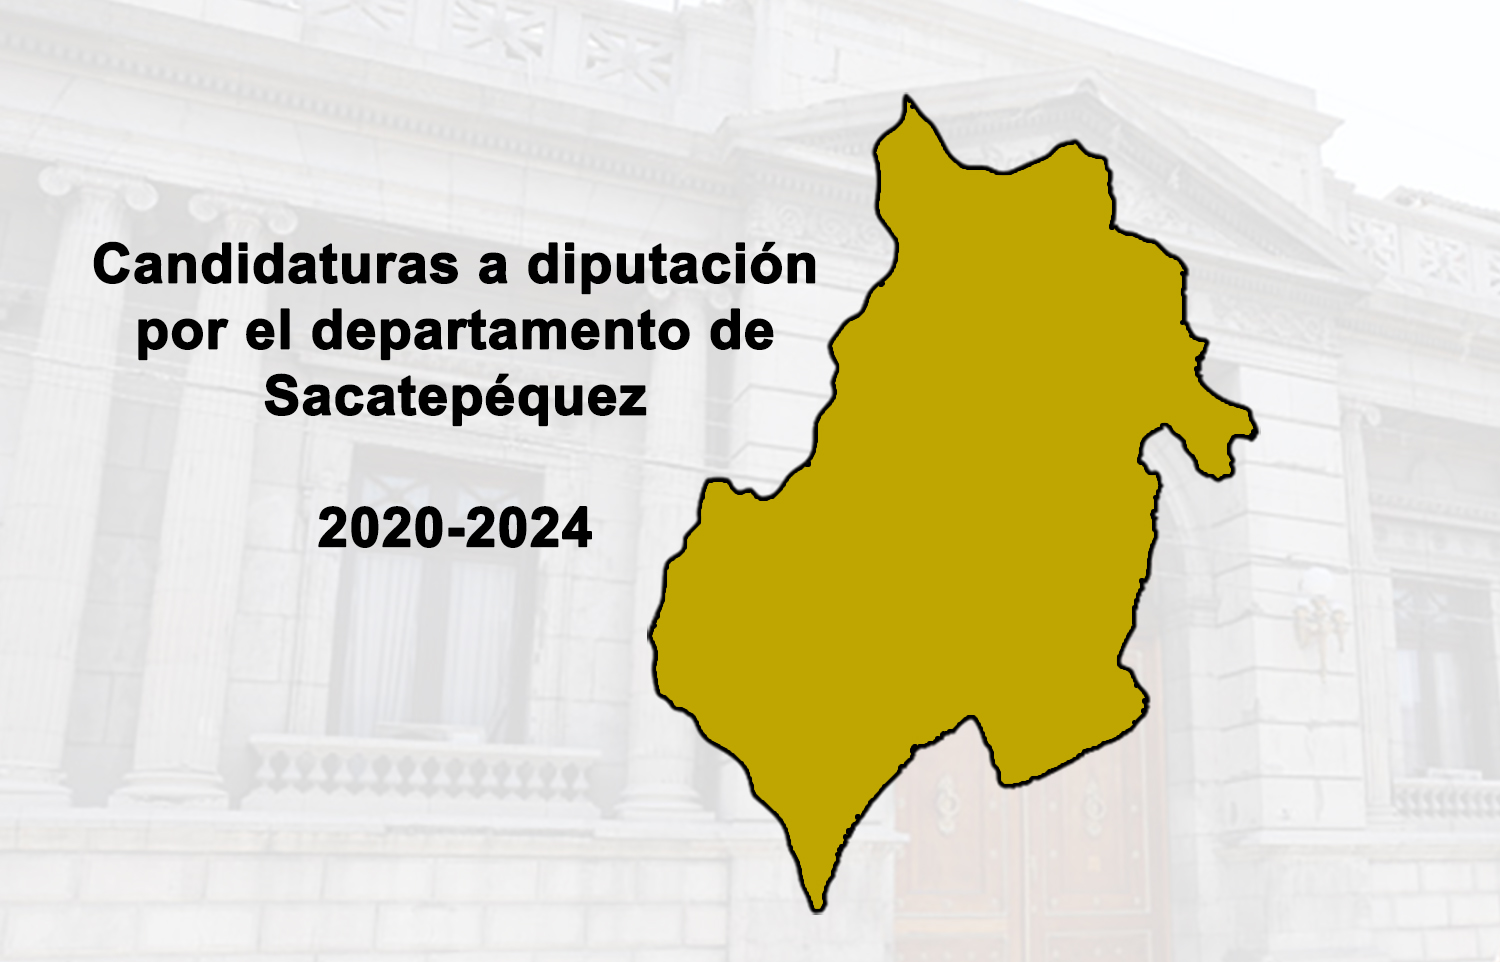 Candidaturas a diputación por el departamento de Sacatepéquez